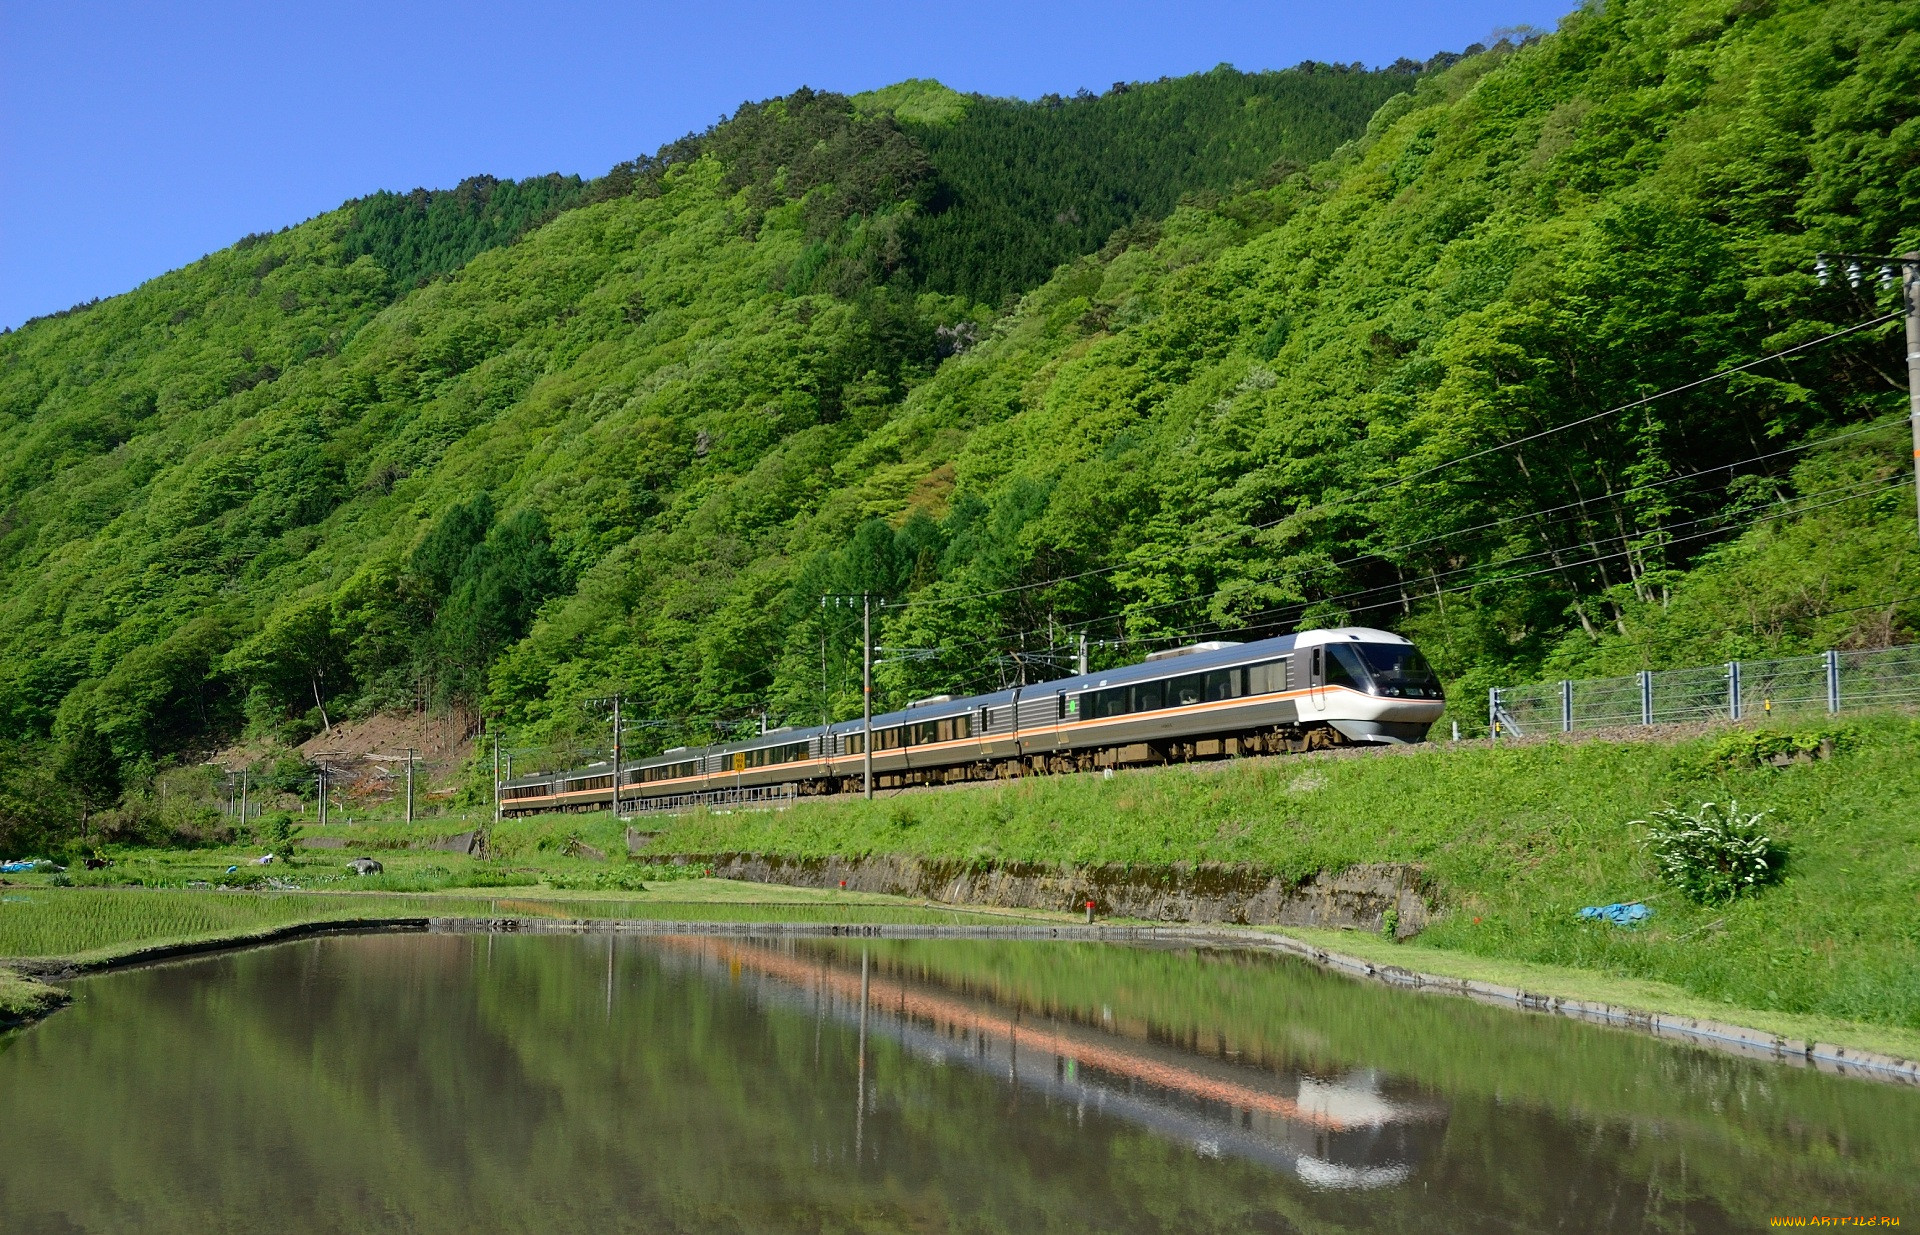 Купить воду в поезде. Ойта, Япония лес поезд. Железнодорожная вода. Поезд обои. Поезд на воде Япония.